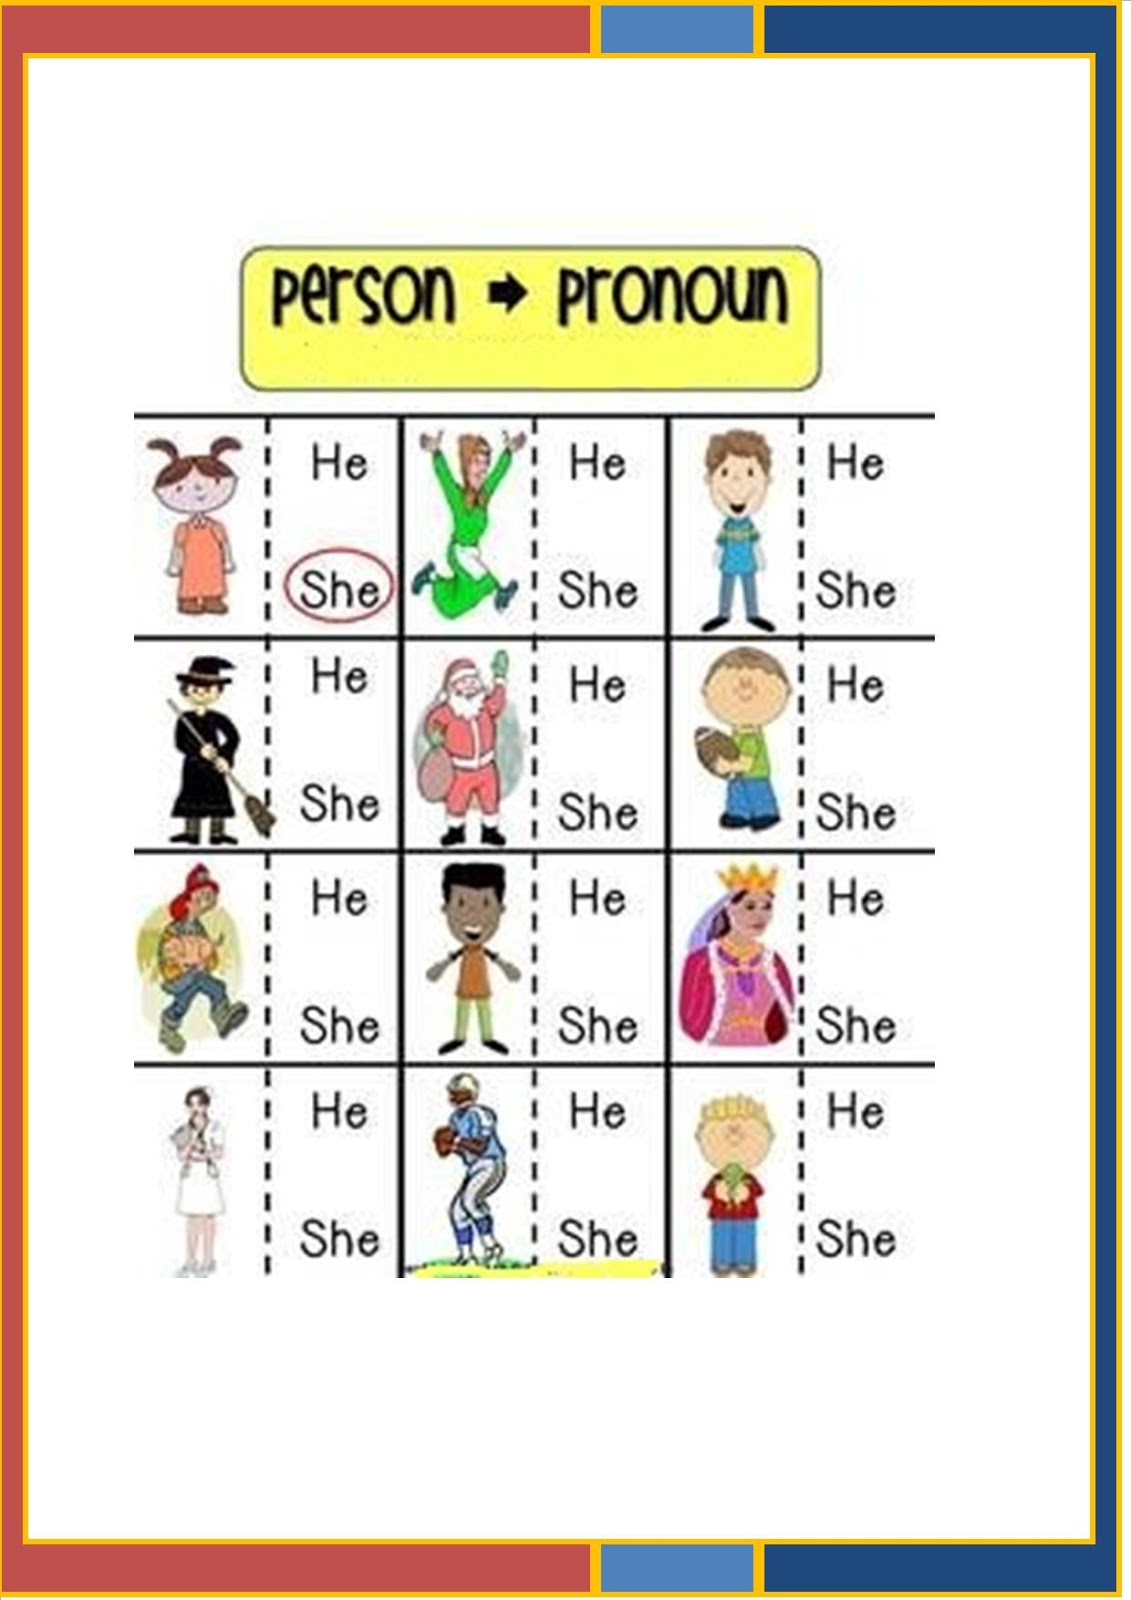 english-la-trama-3-family-and-pronouns